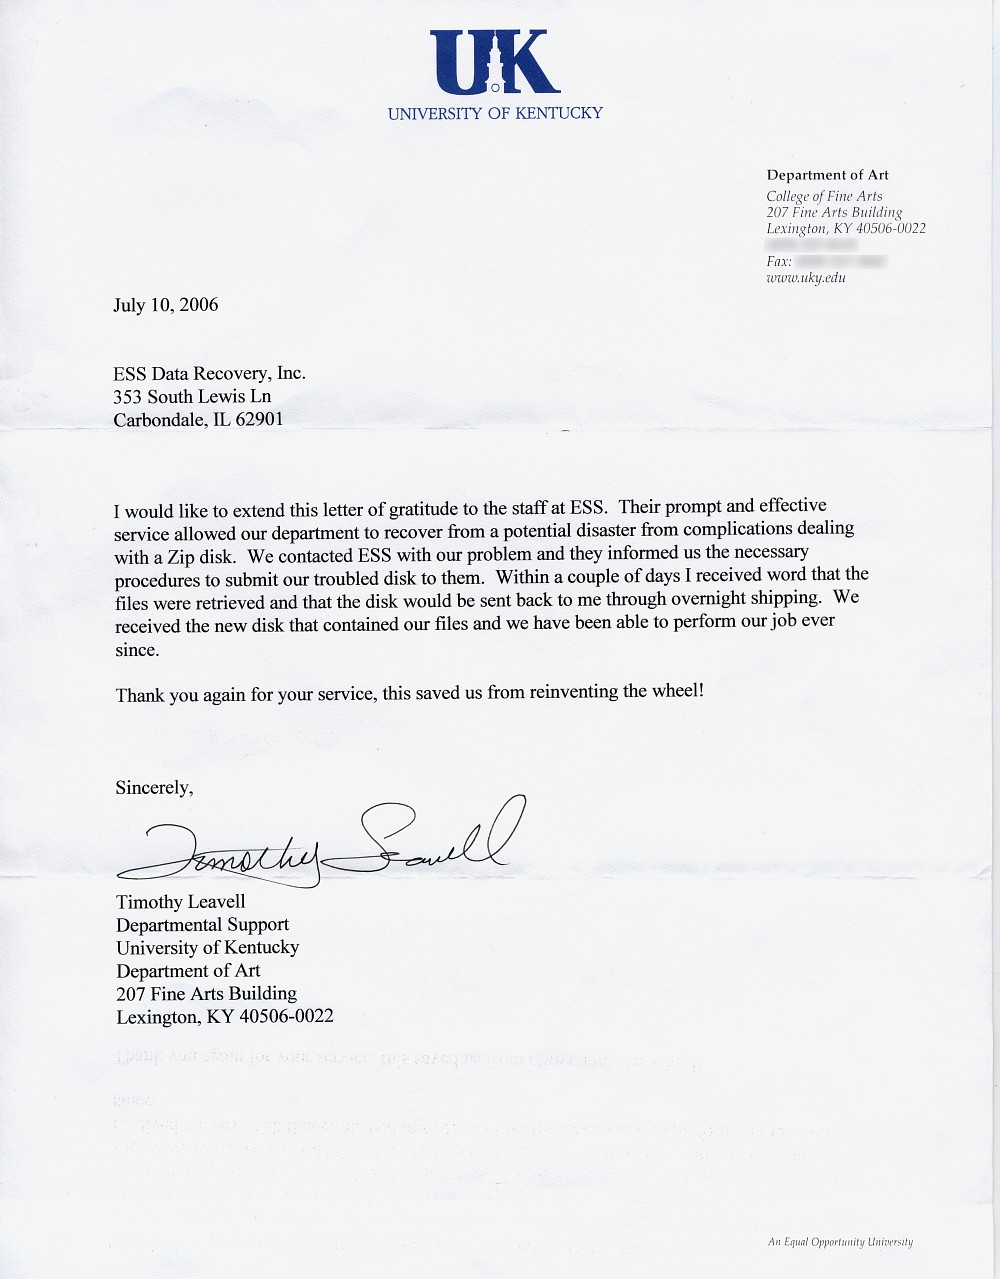 University of Kentucky testimonial letter